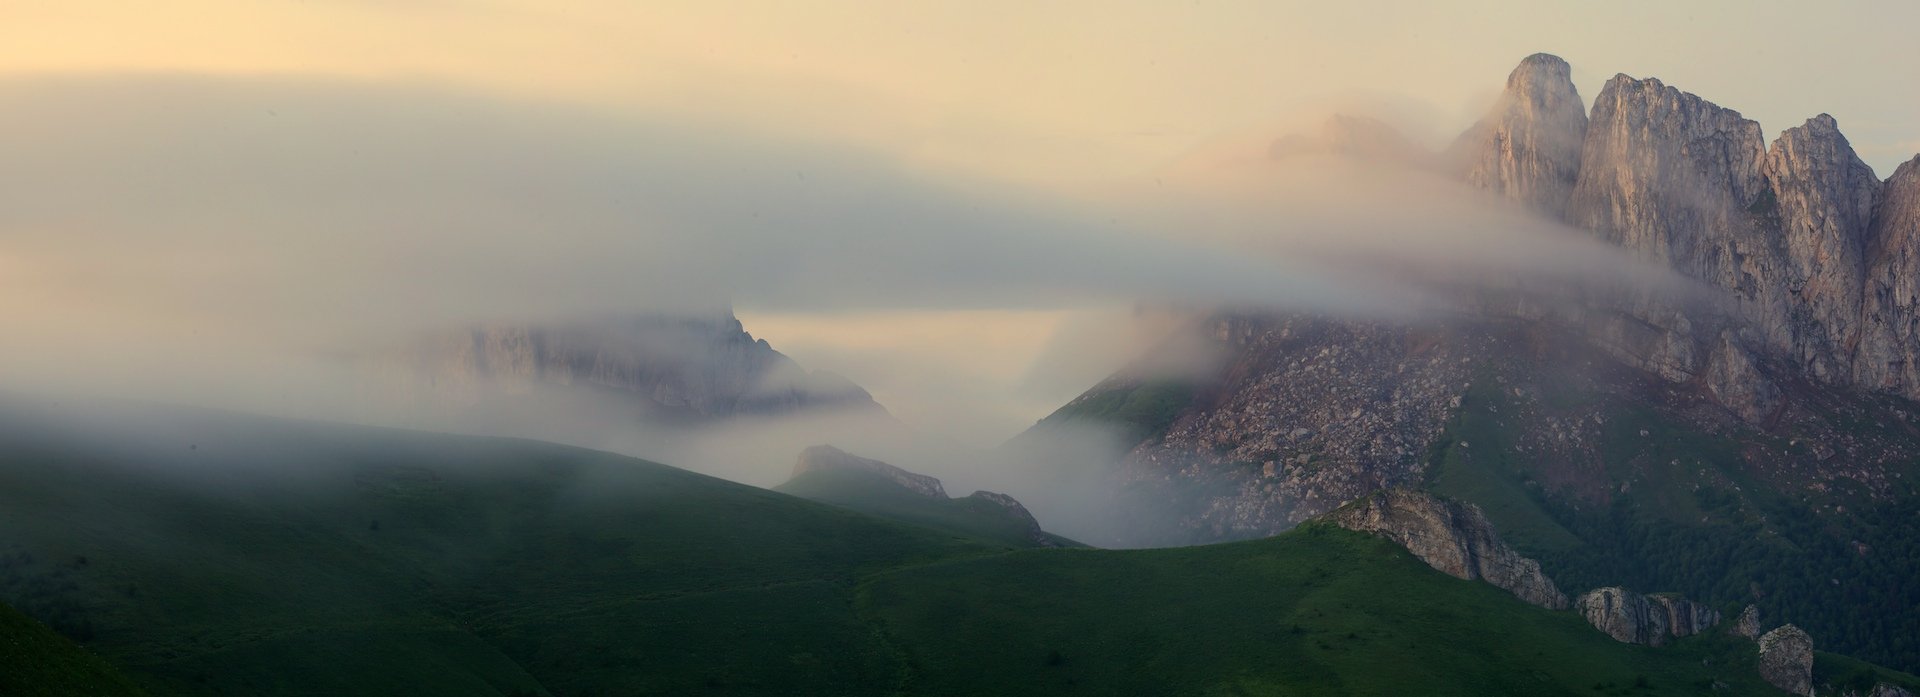 природный парк большой тхач рассвет горы кавказ утренний туман ачешбоки, Никифоров Егор